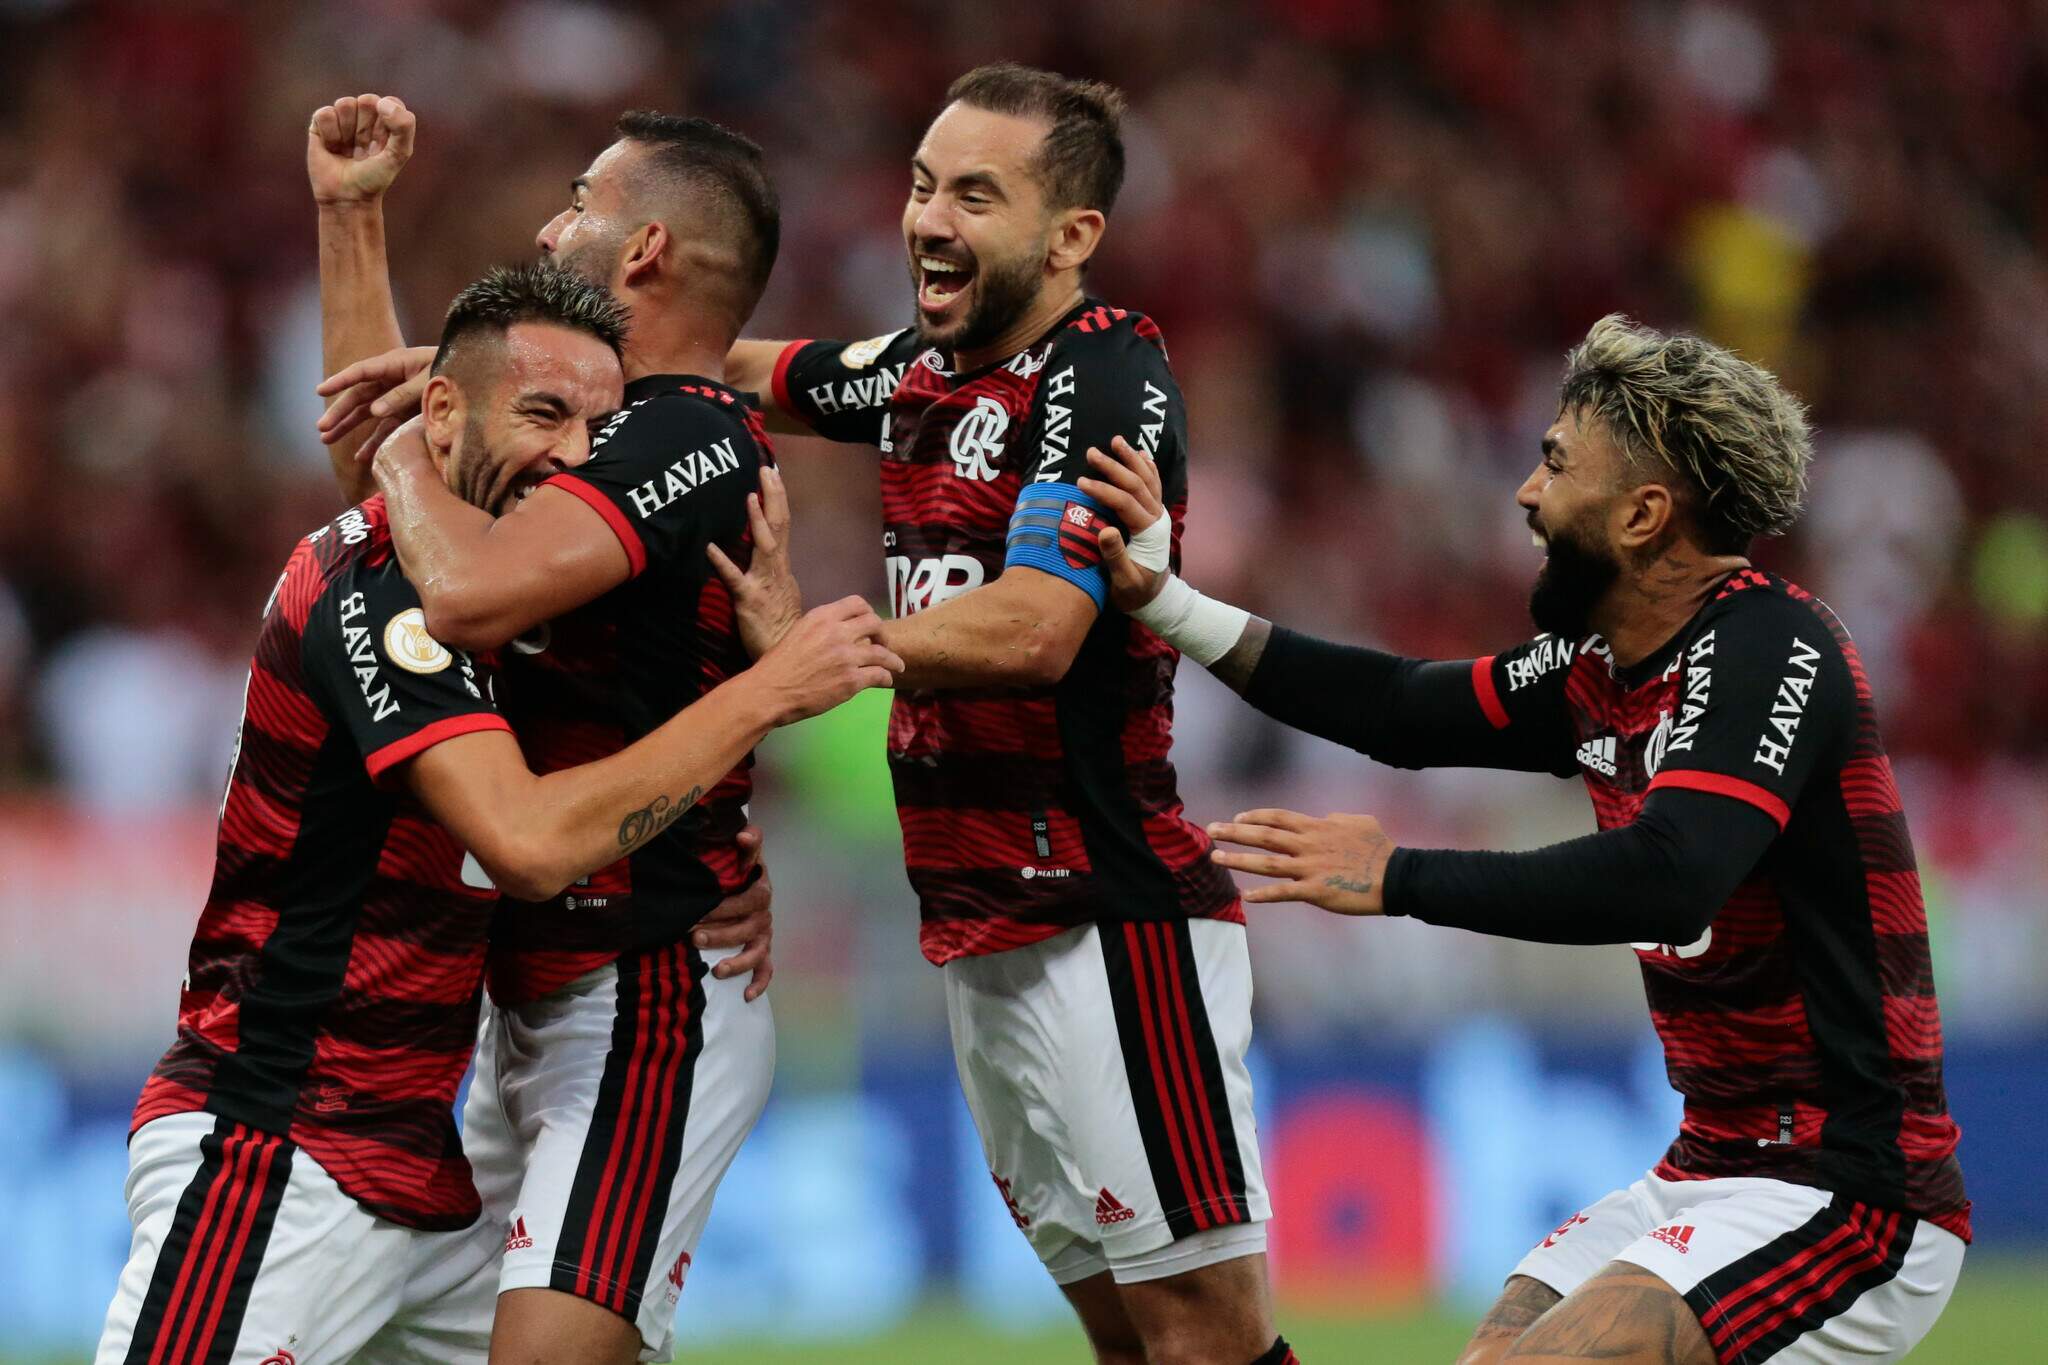 Empurrado por 50 mil torcedores, Flamengo goleia São Paulo no Maracanã -  Esportes - Campo Grande News